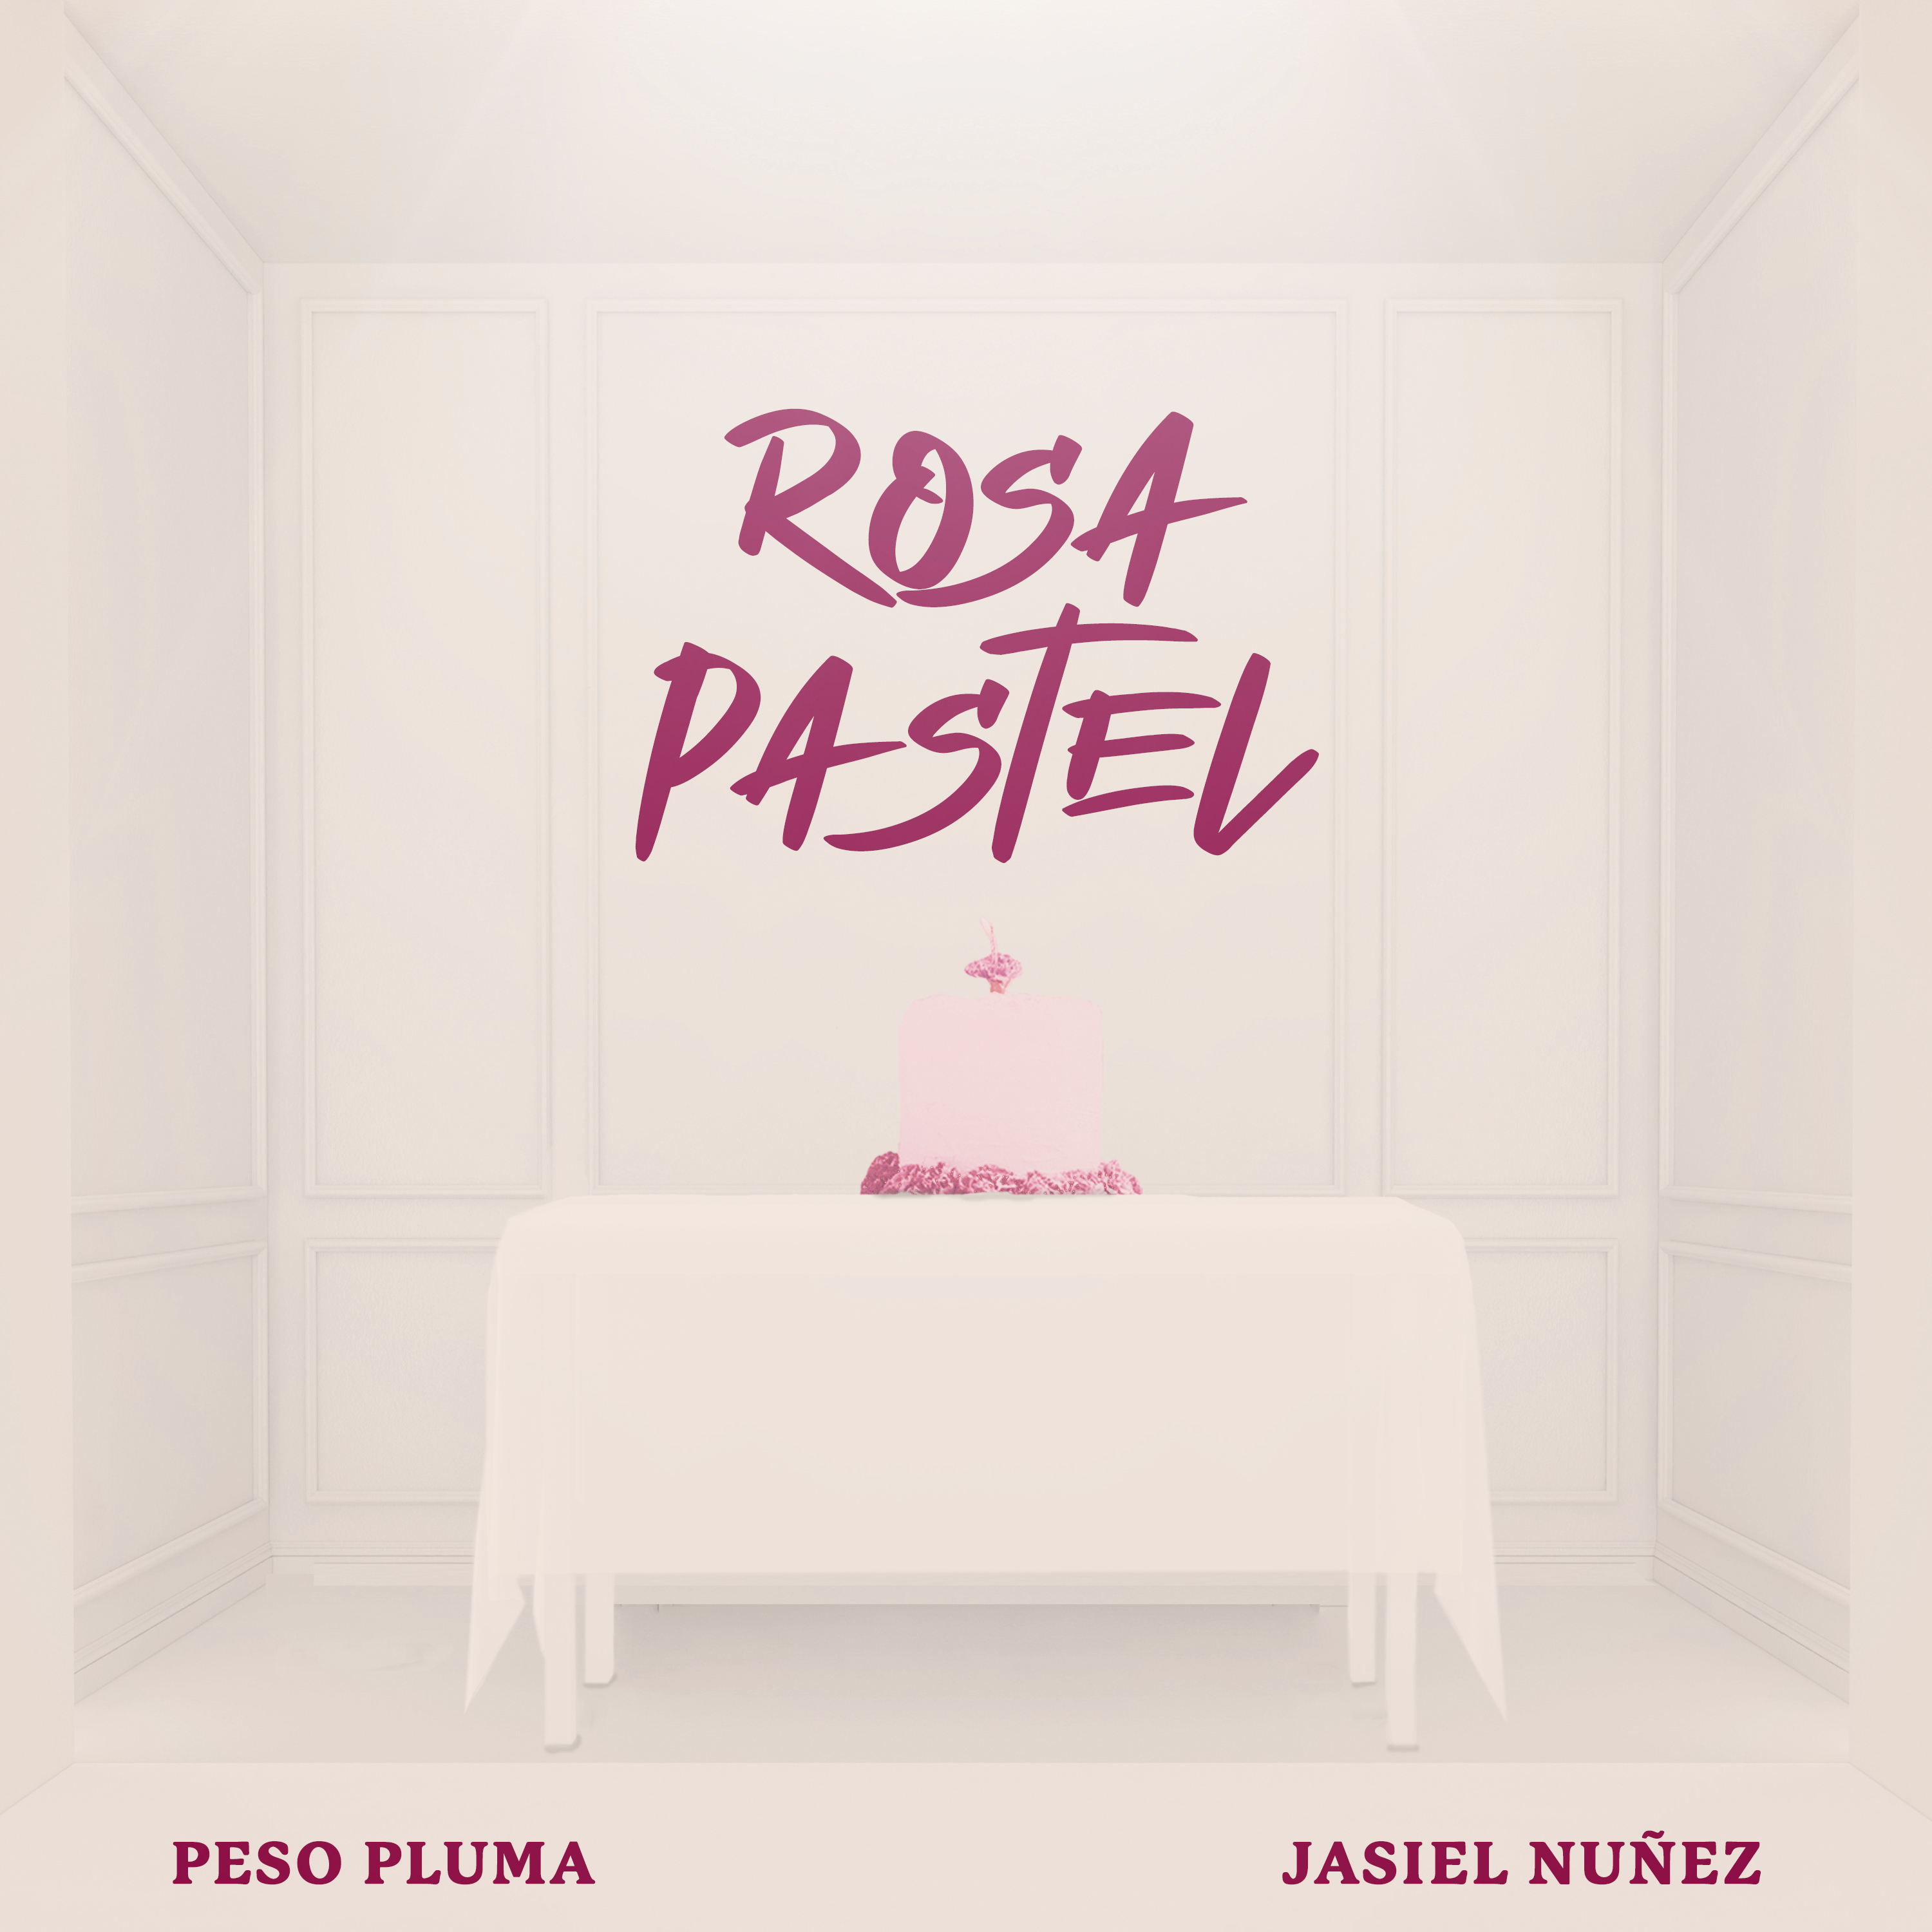 Peso Pluma estrena “Rosa pastel” y anuncia su sello discográfico